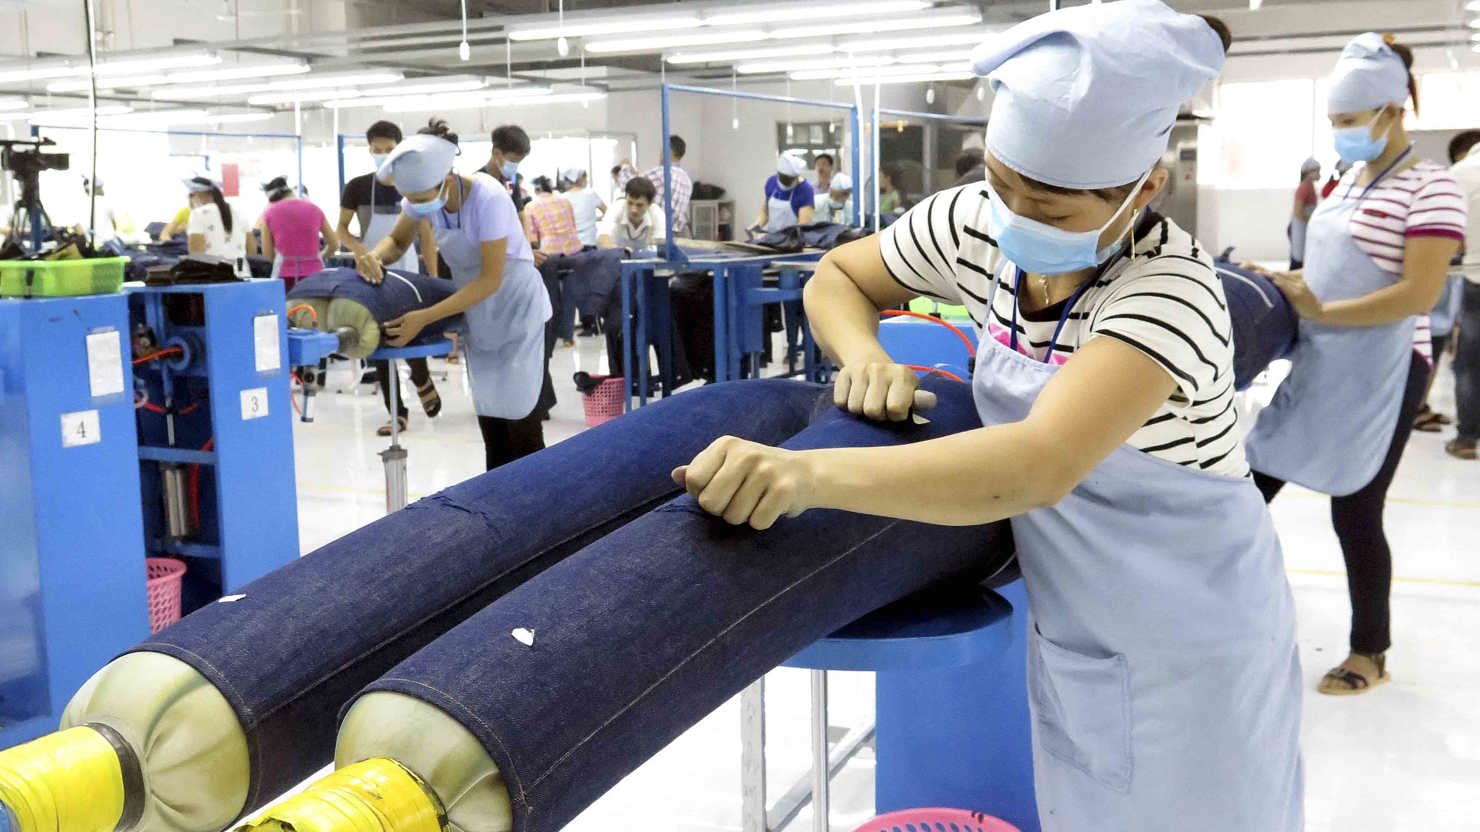 Chương trình quốc gia “Nâng cao năng suất và chất lượng sản phẩm, hàng hoá của doanh nghiệp Việt Nam đến năm 2020”, đánh dấu bước chuyển biến mạnh mẽ trong hoạt động thúc đẩy năng suất chất lượng tại Việt Nam.